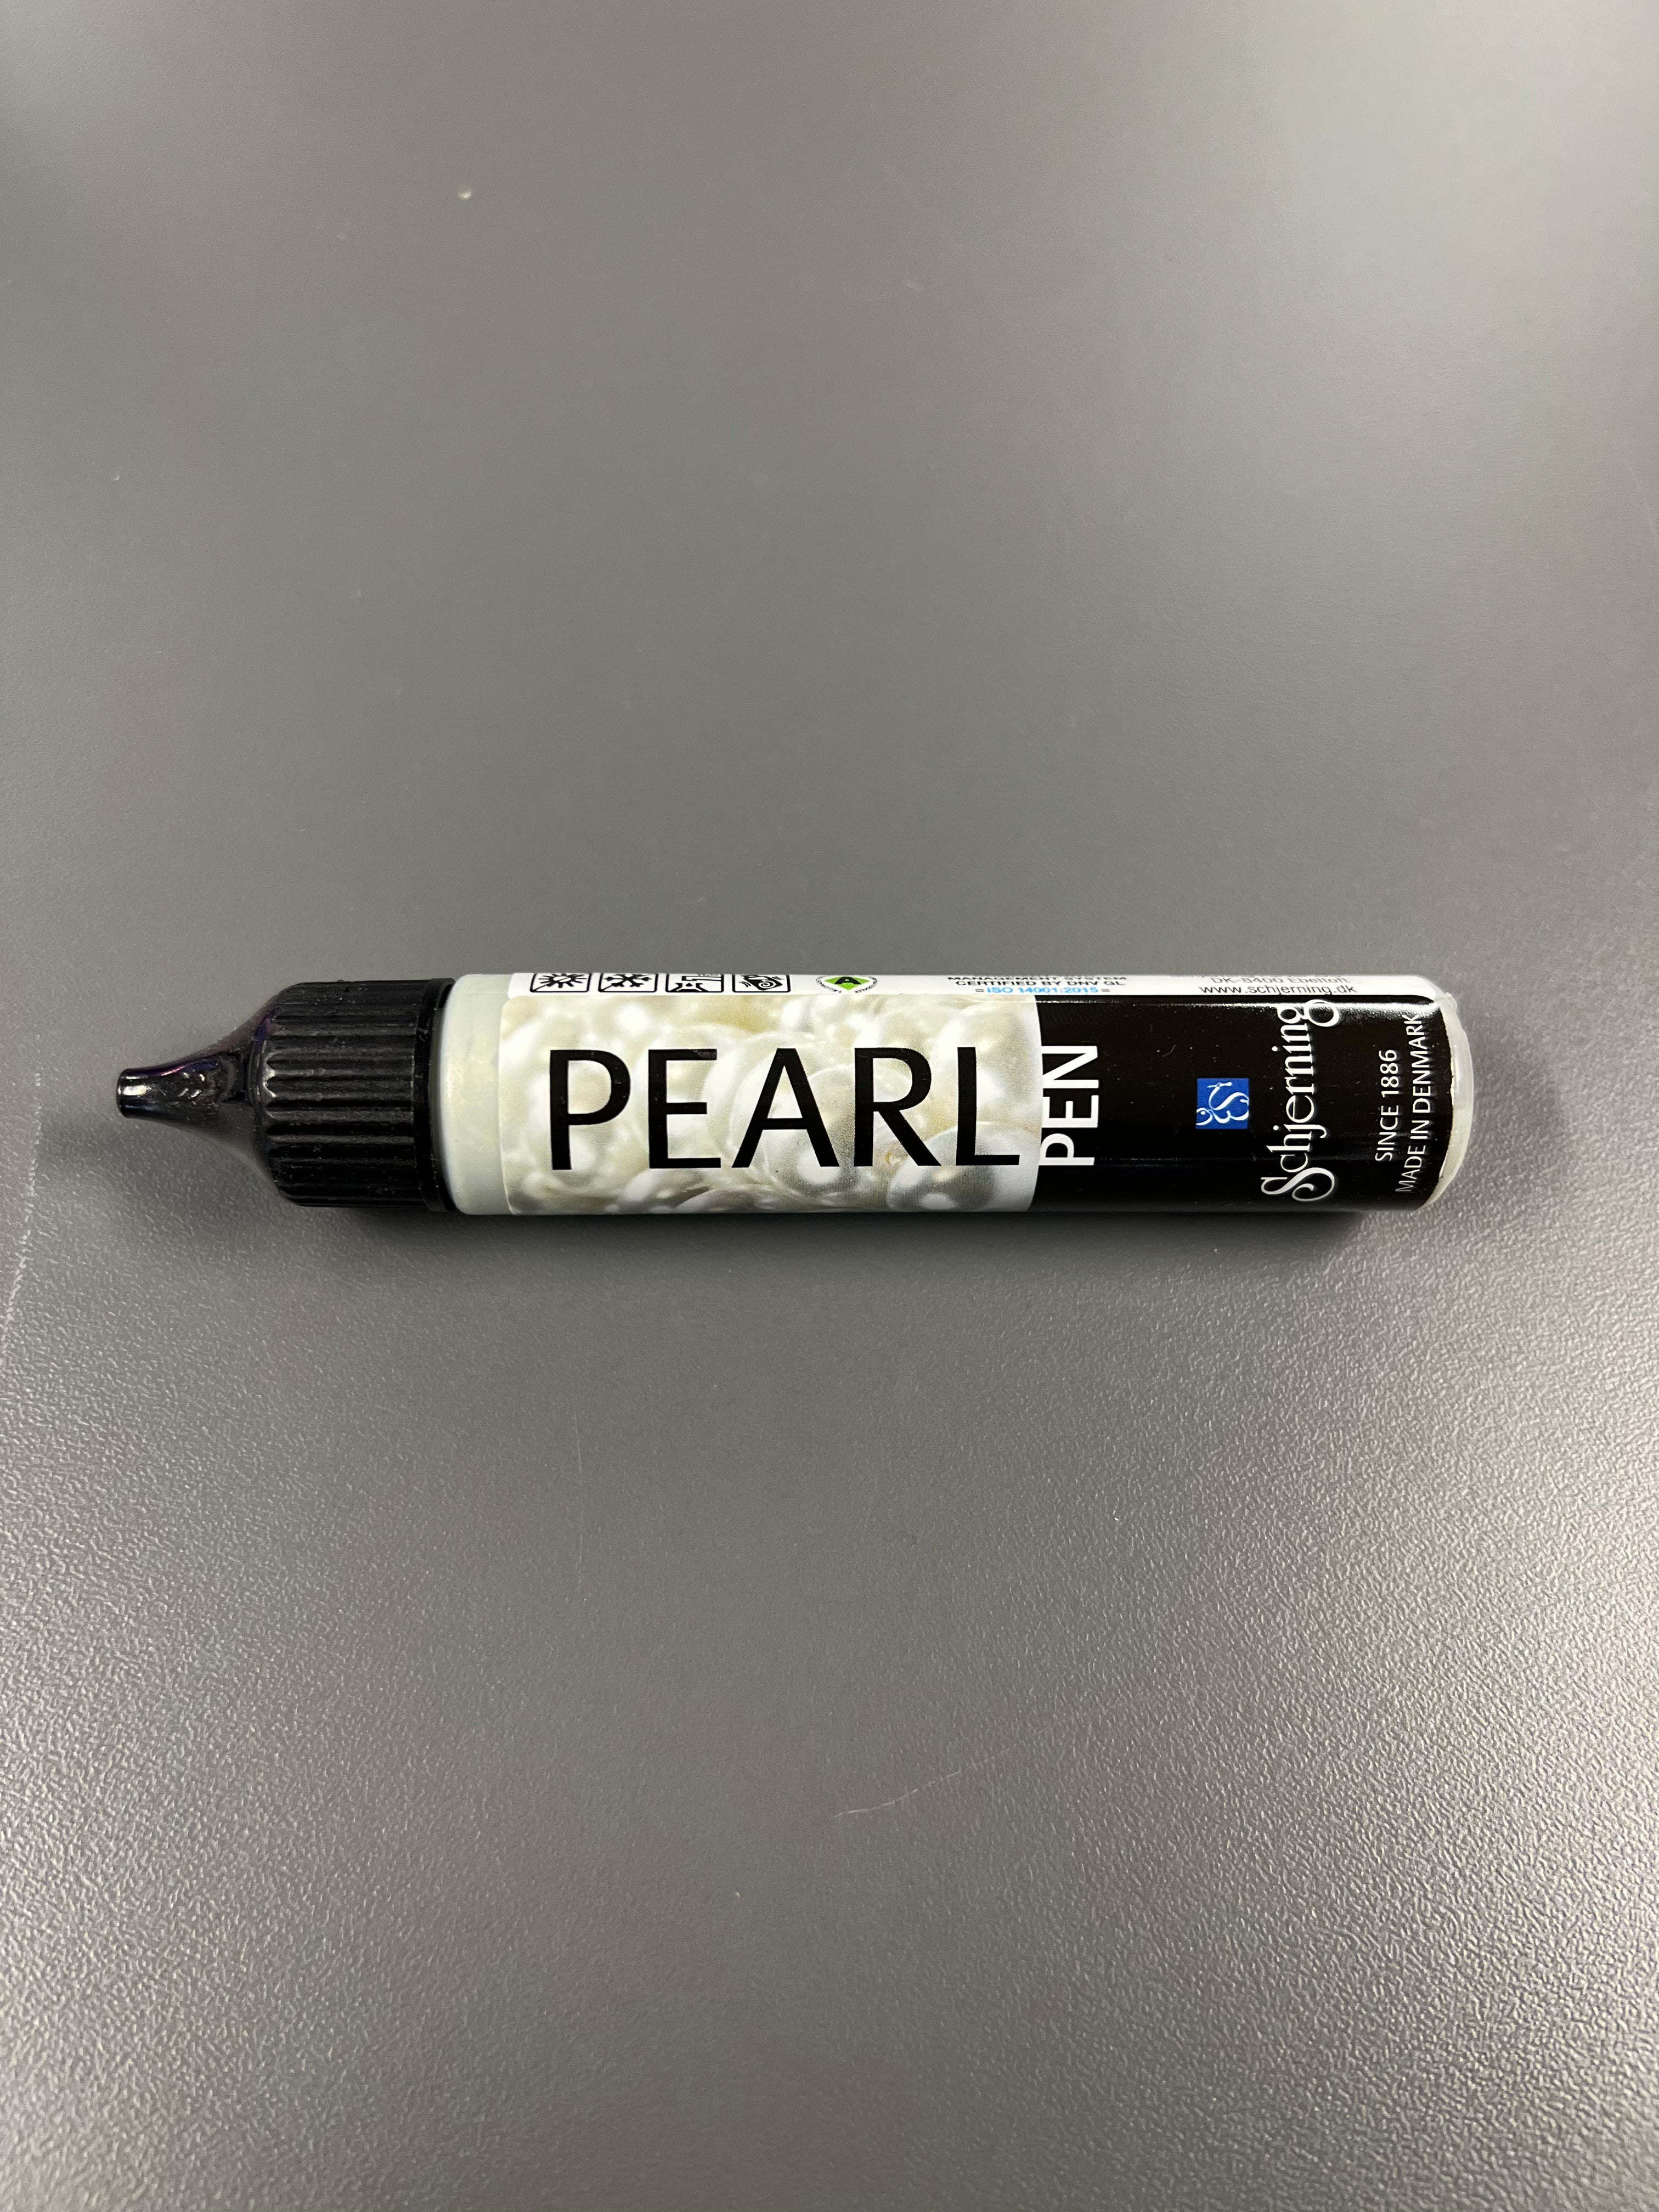 Pearl Pen Mint